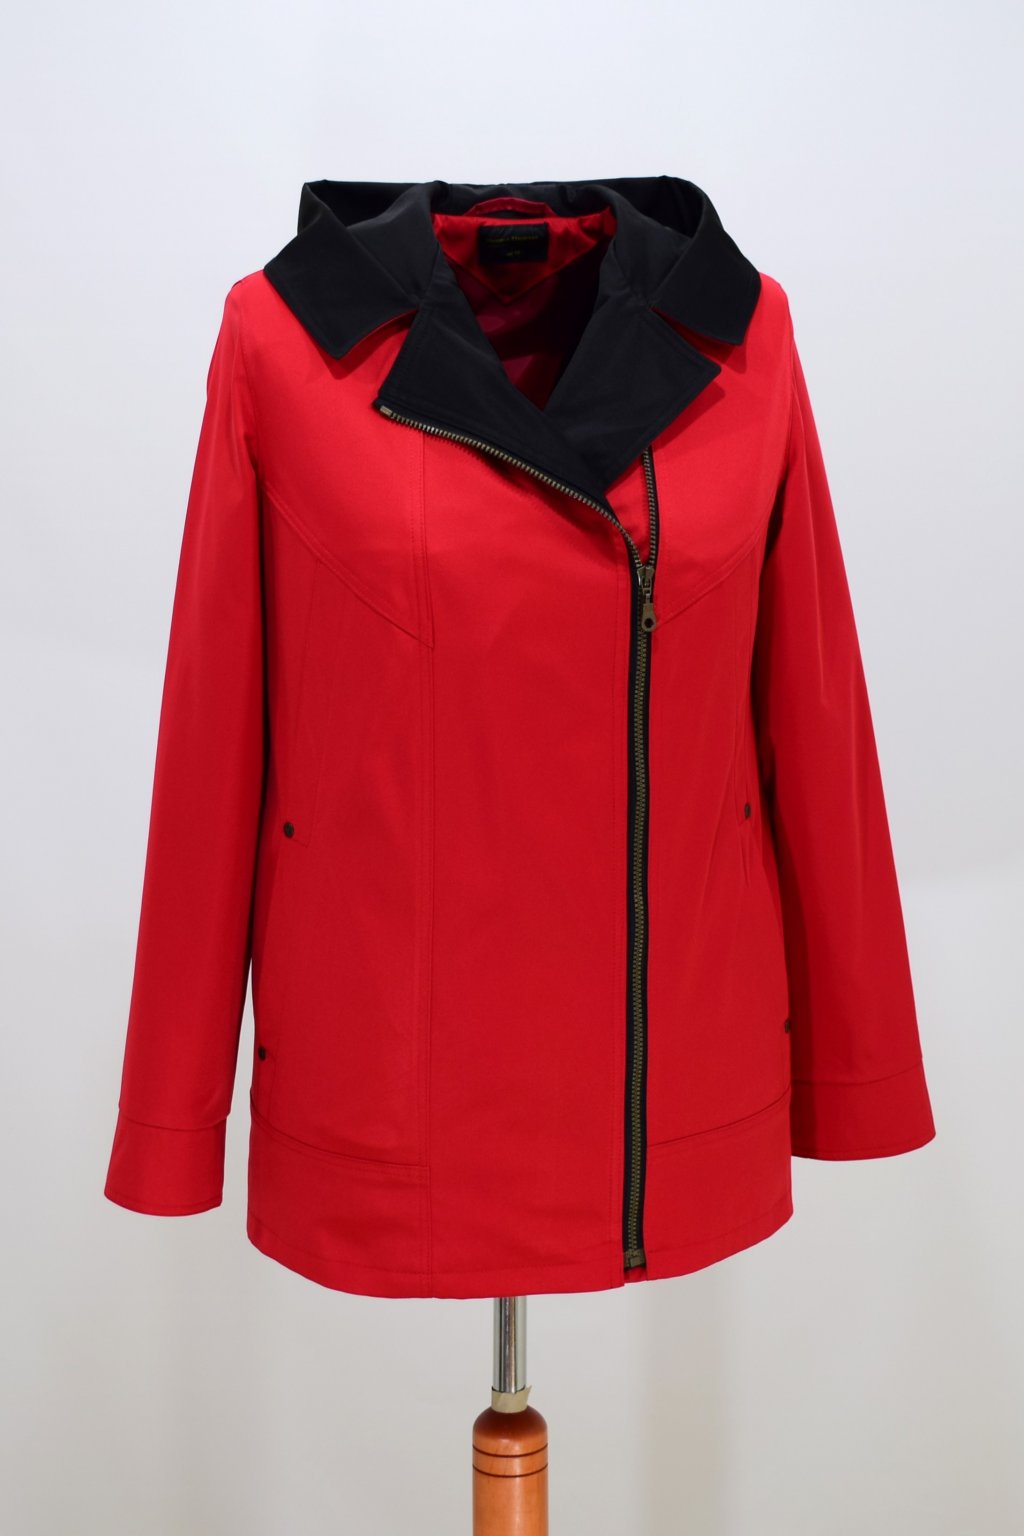 Dámská červená jarní bunda Marika nadměrné velikosti.